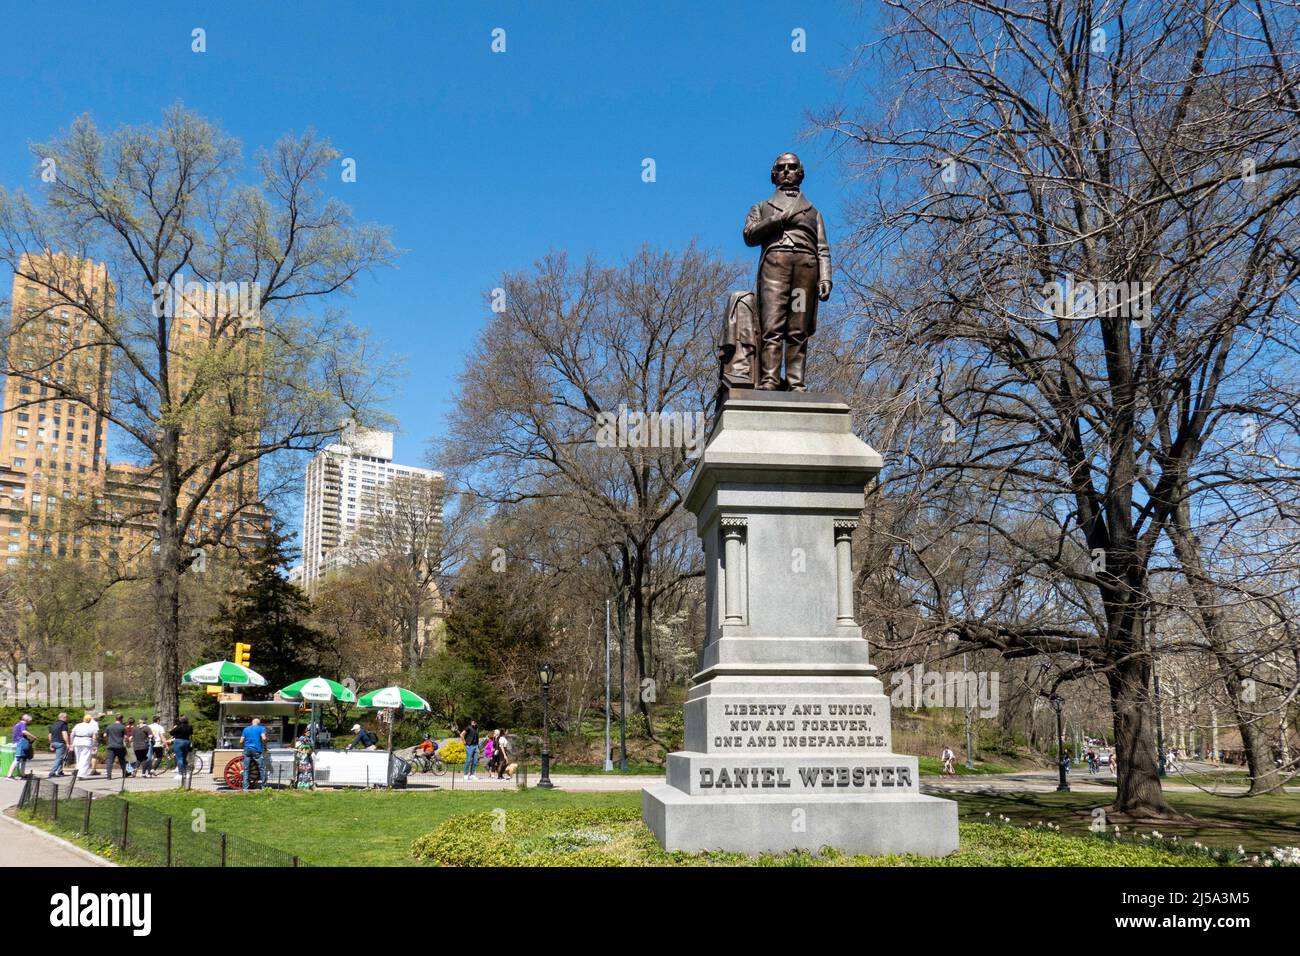 Die überlebensgroße Bronzeskulptur von Daniel Webster befindet sich im Central Park, New York City, USA 2022 Stockfoto